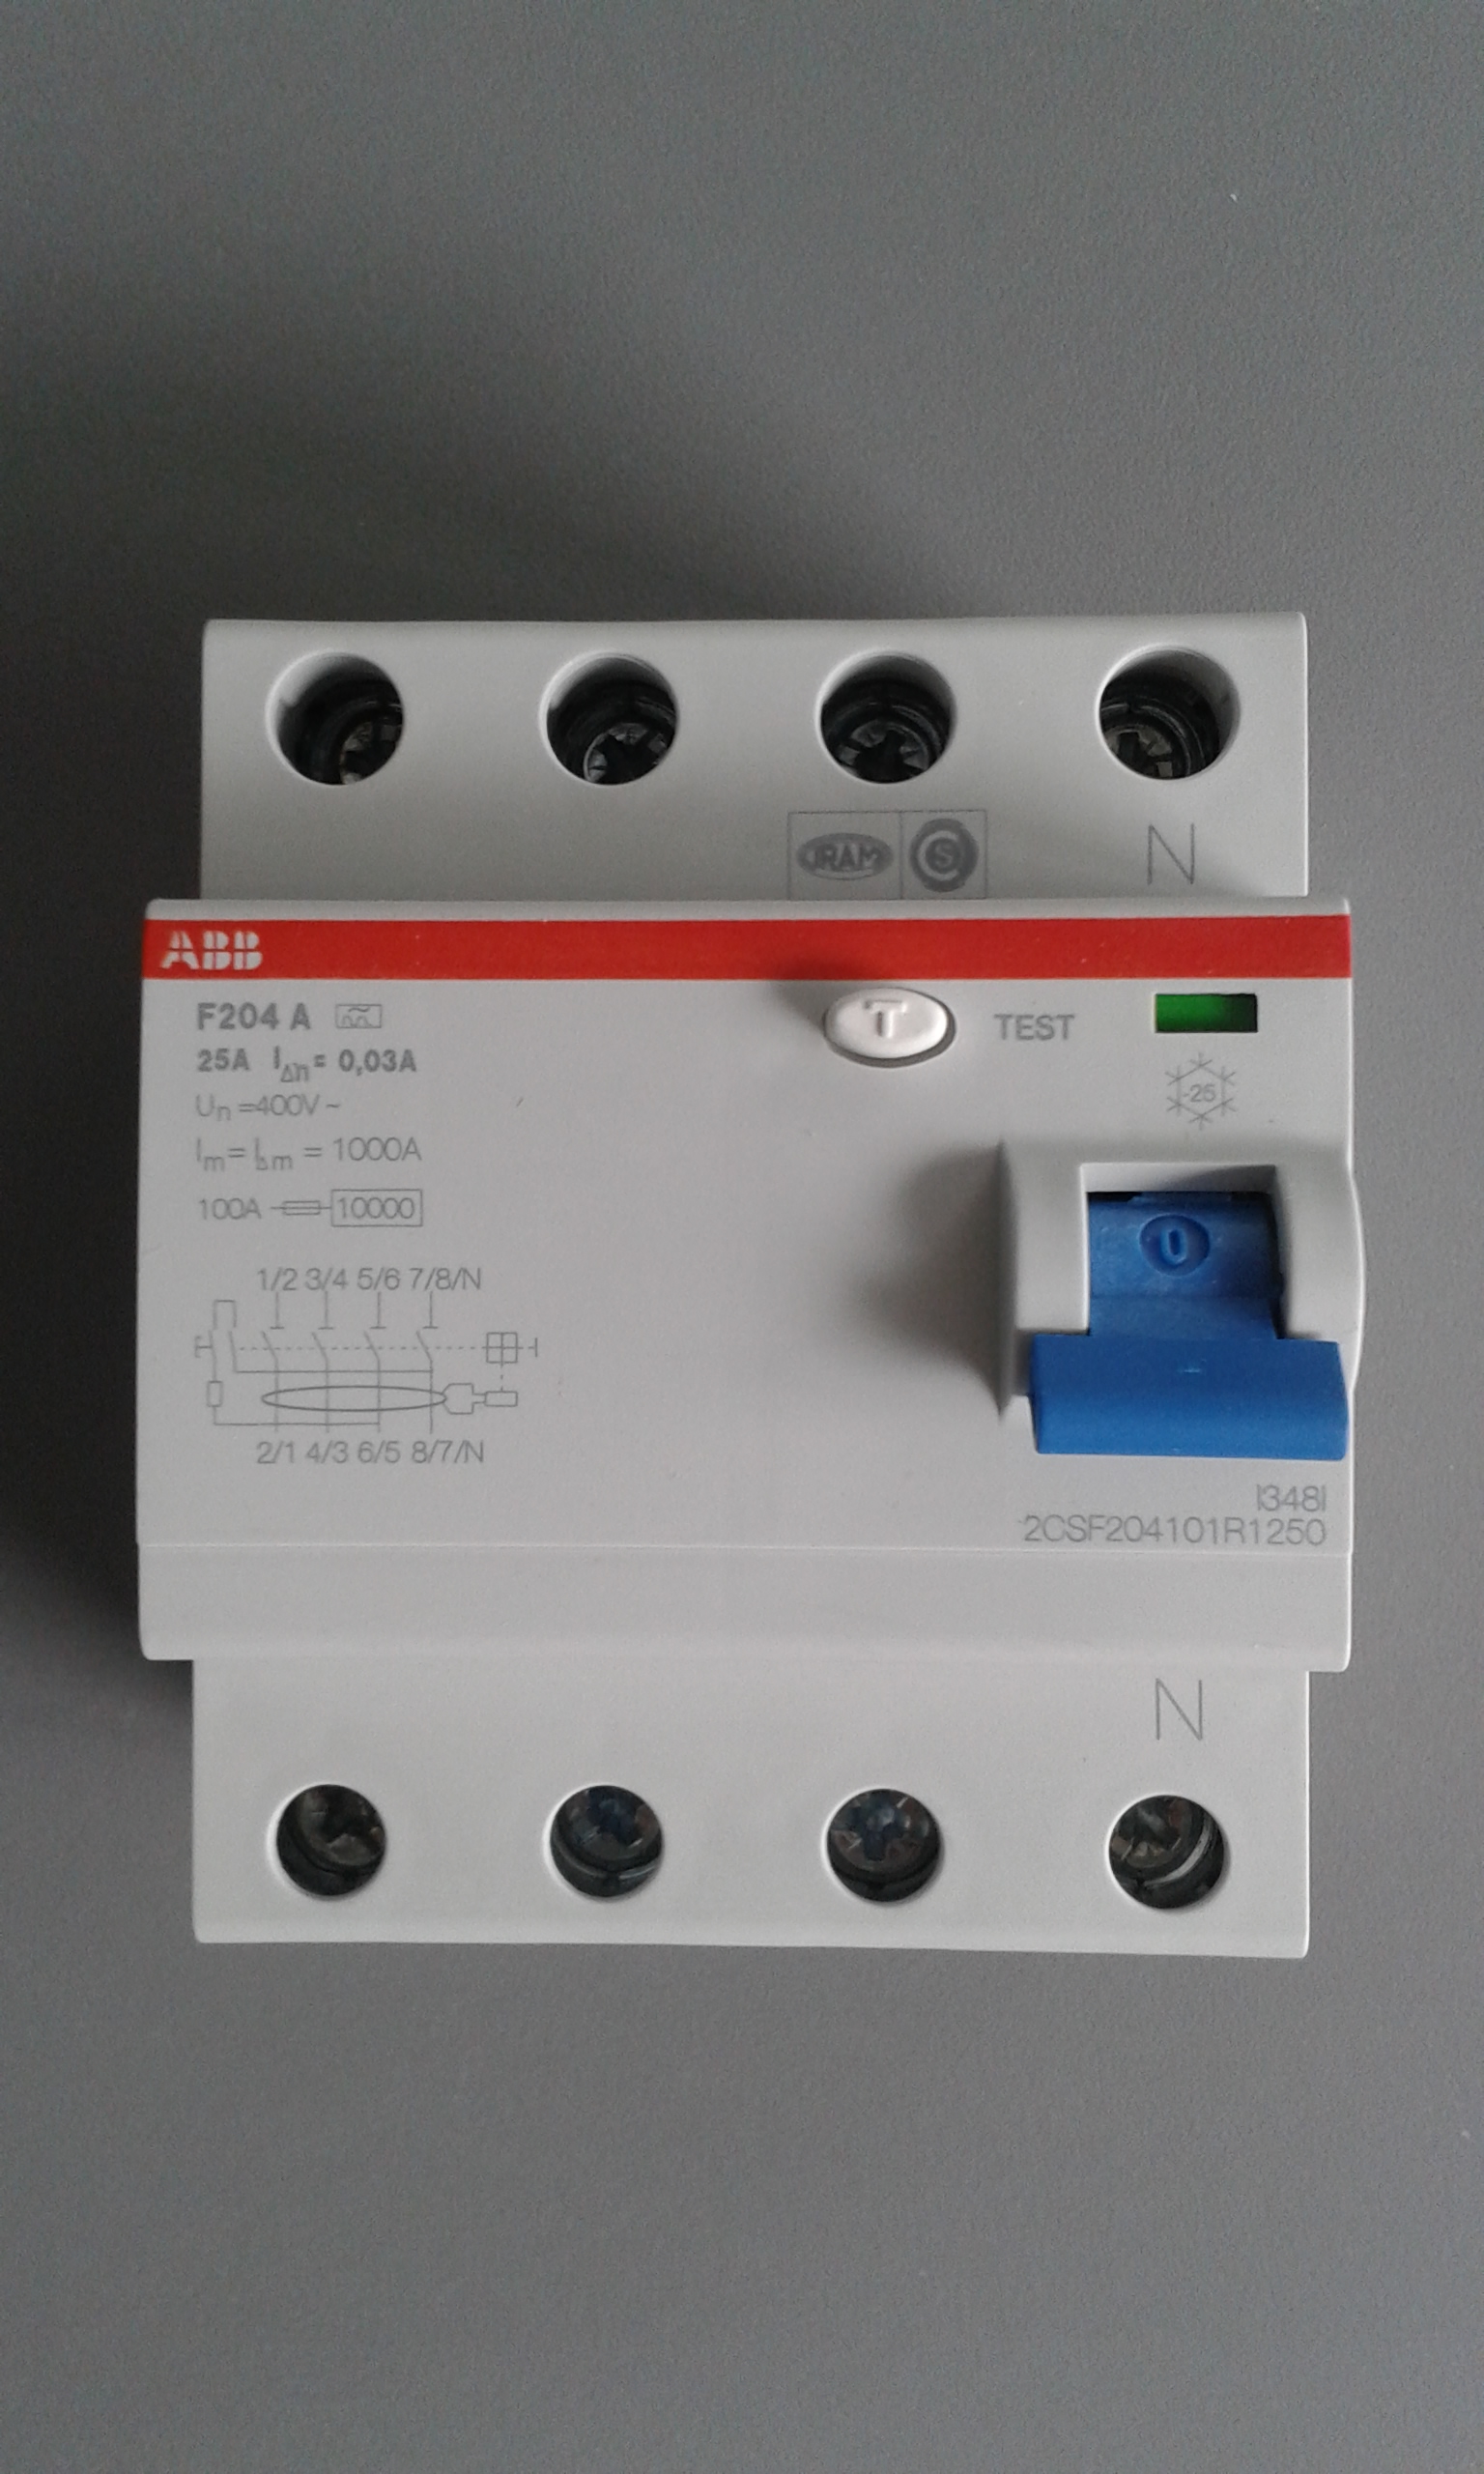 Elektromaterial günstig kaufen - Online Shop - Hager HTS350C SLS Schalter 3  polig Cs-Charakteristik 50A für Sammelschiene QuickConnect